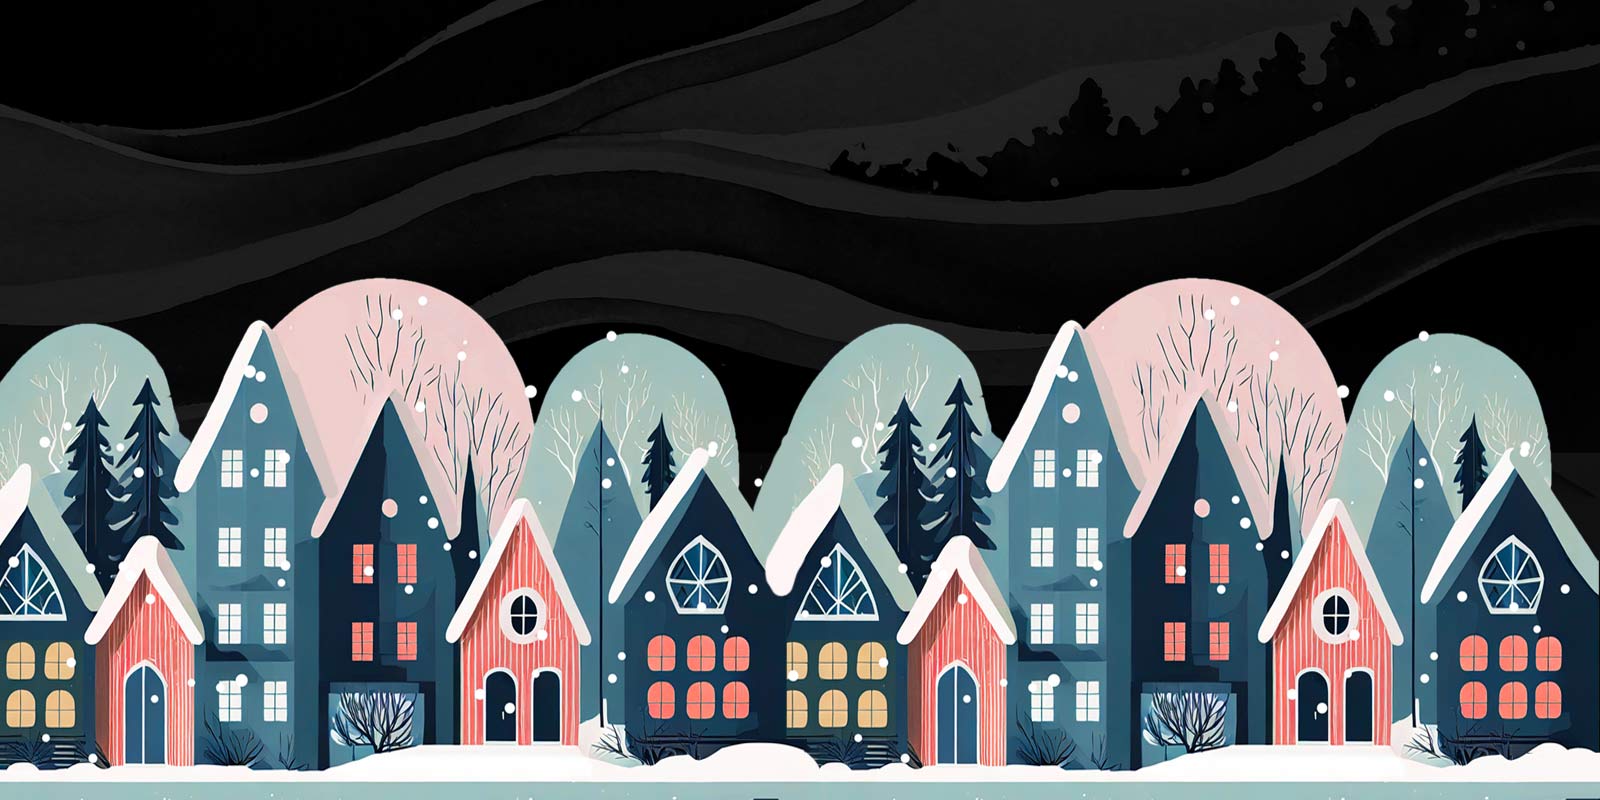 M025. Челлендж по рисованию зимних домиков в скандинавском стиле